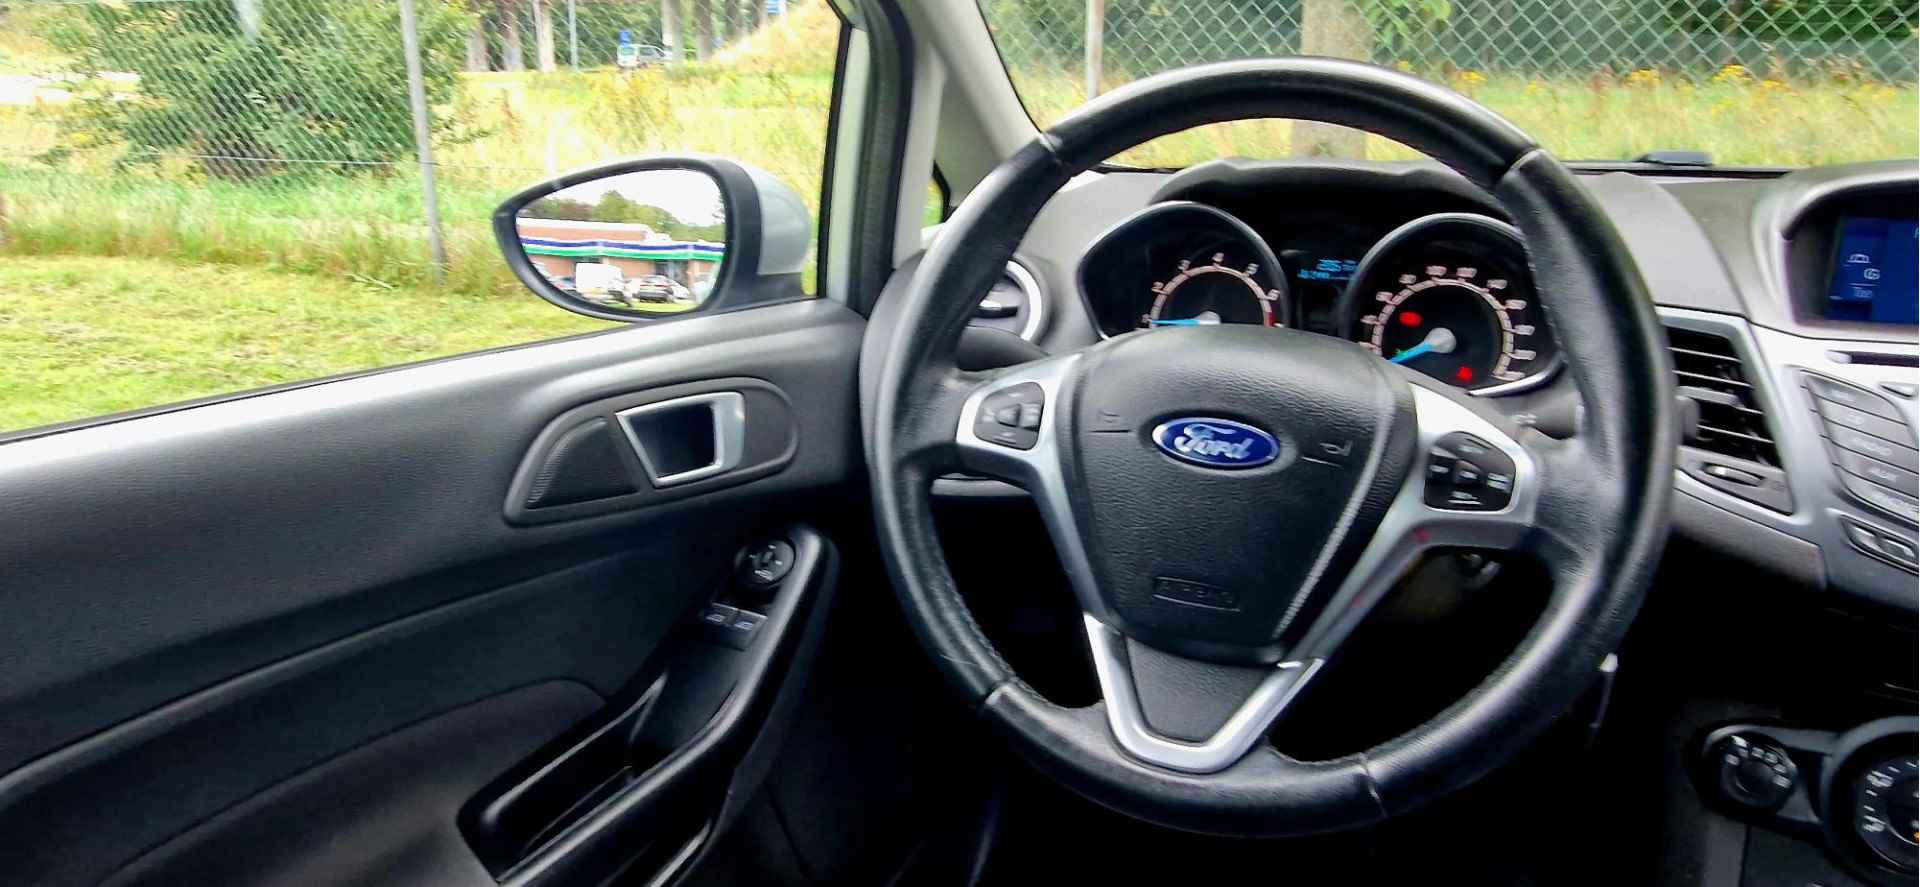 Ford Fiesta 1.0 80PK Style Ultimate I NAVI I AIRCO I CRUISE I - 9/28